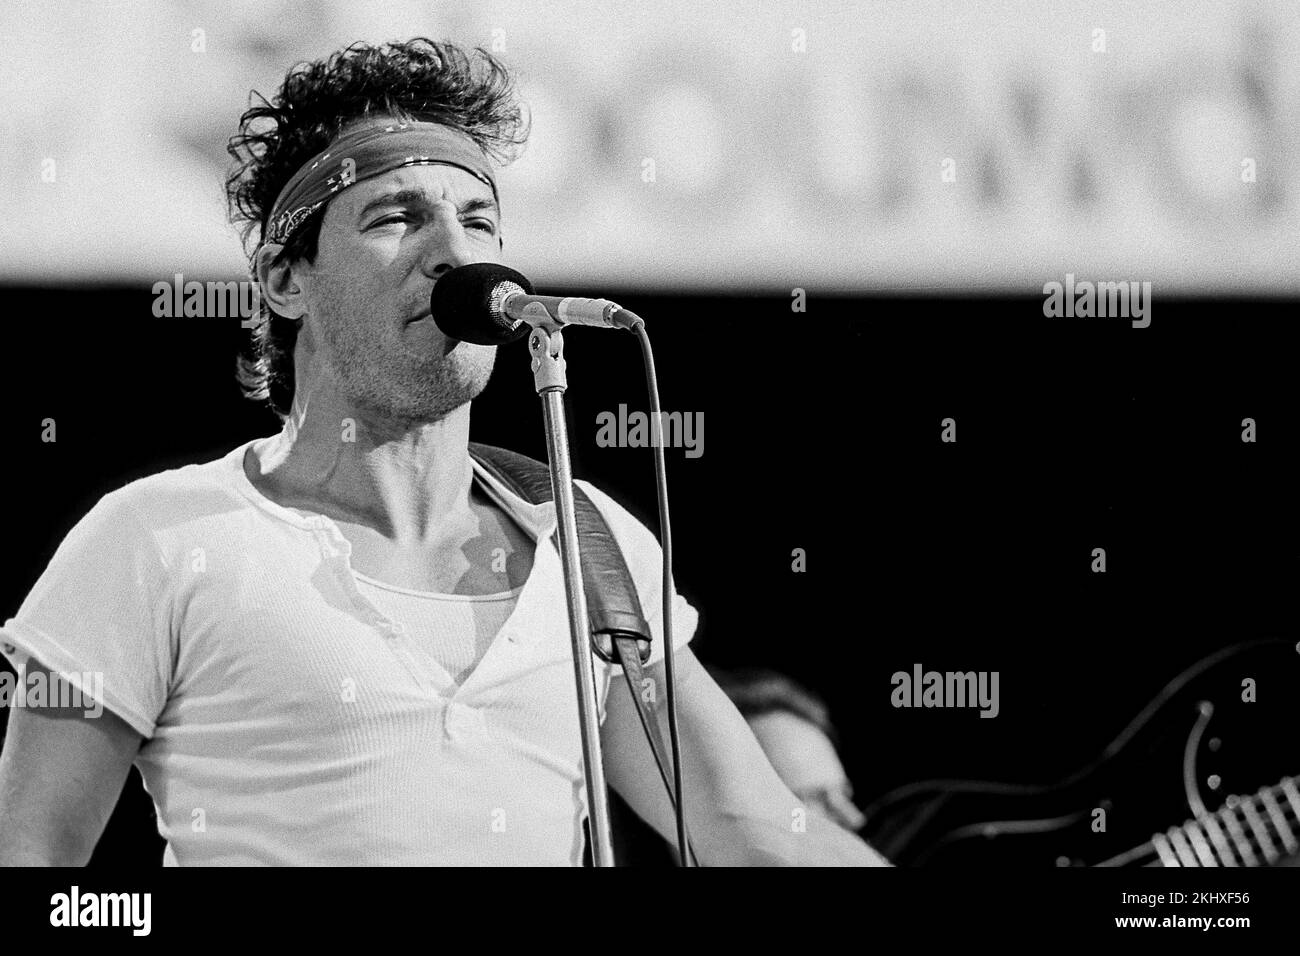 Bruce Springsteen en concert avec le groupe E Streetband dans le stade Feyenoord né dans la tournée des États-Unis. - Rotterdam Hollande - vvbvanbreefotografie Banque D'Images